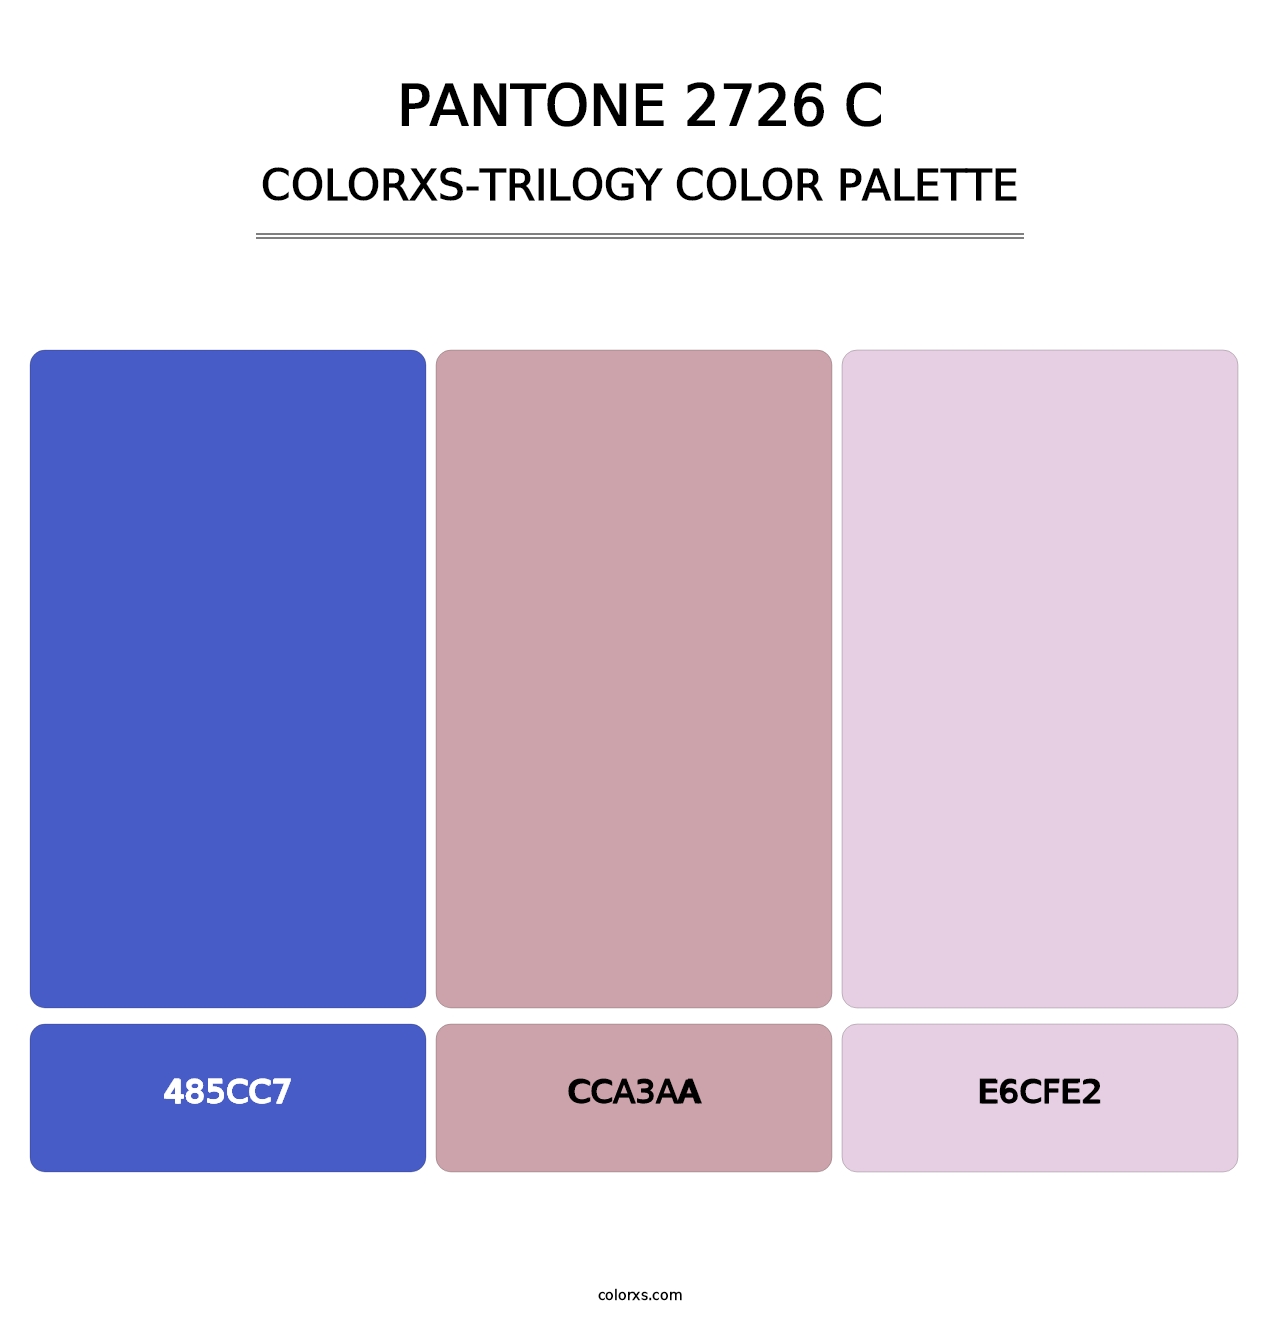 PANTONE 2726 C - Colorxs Trilogy Palette